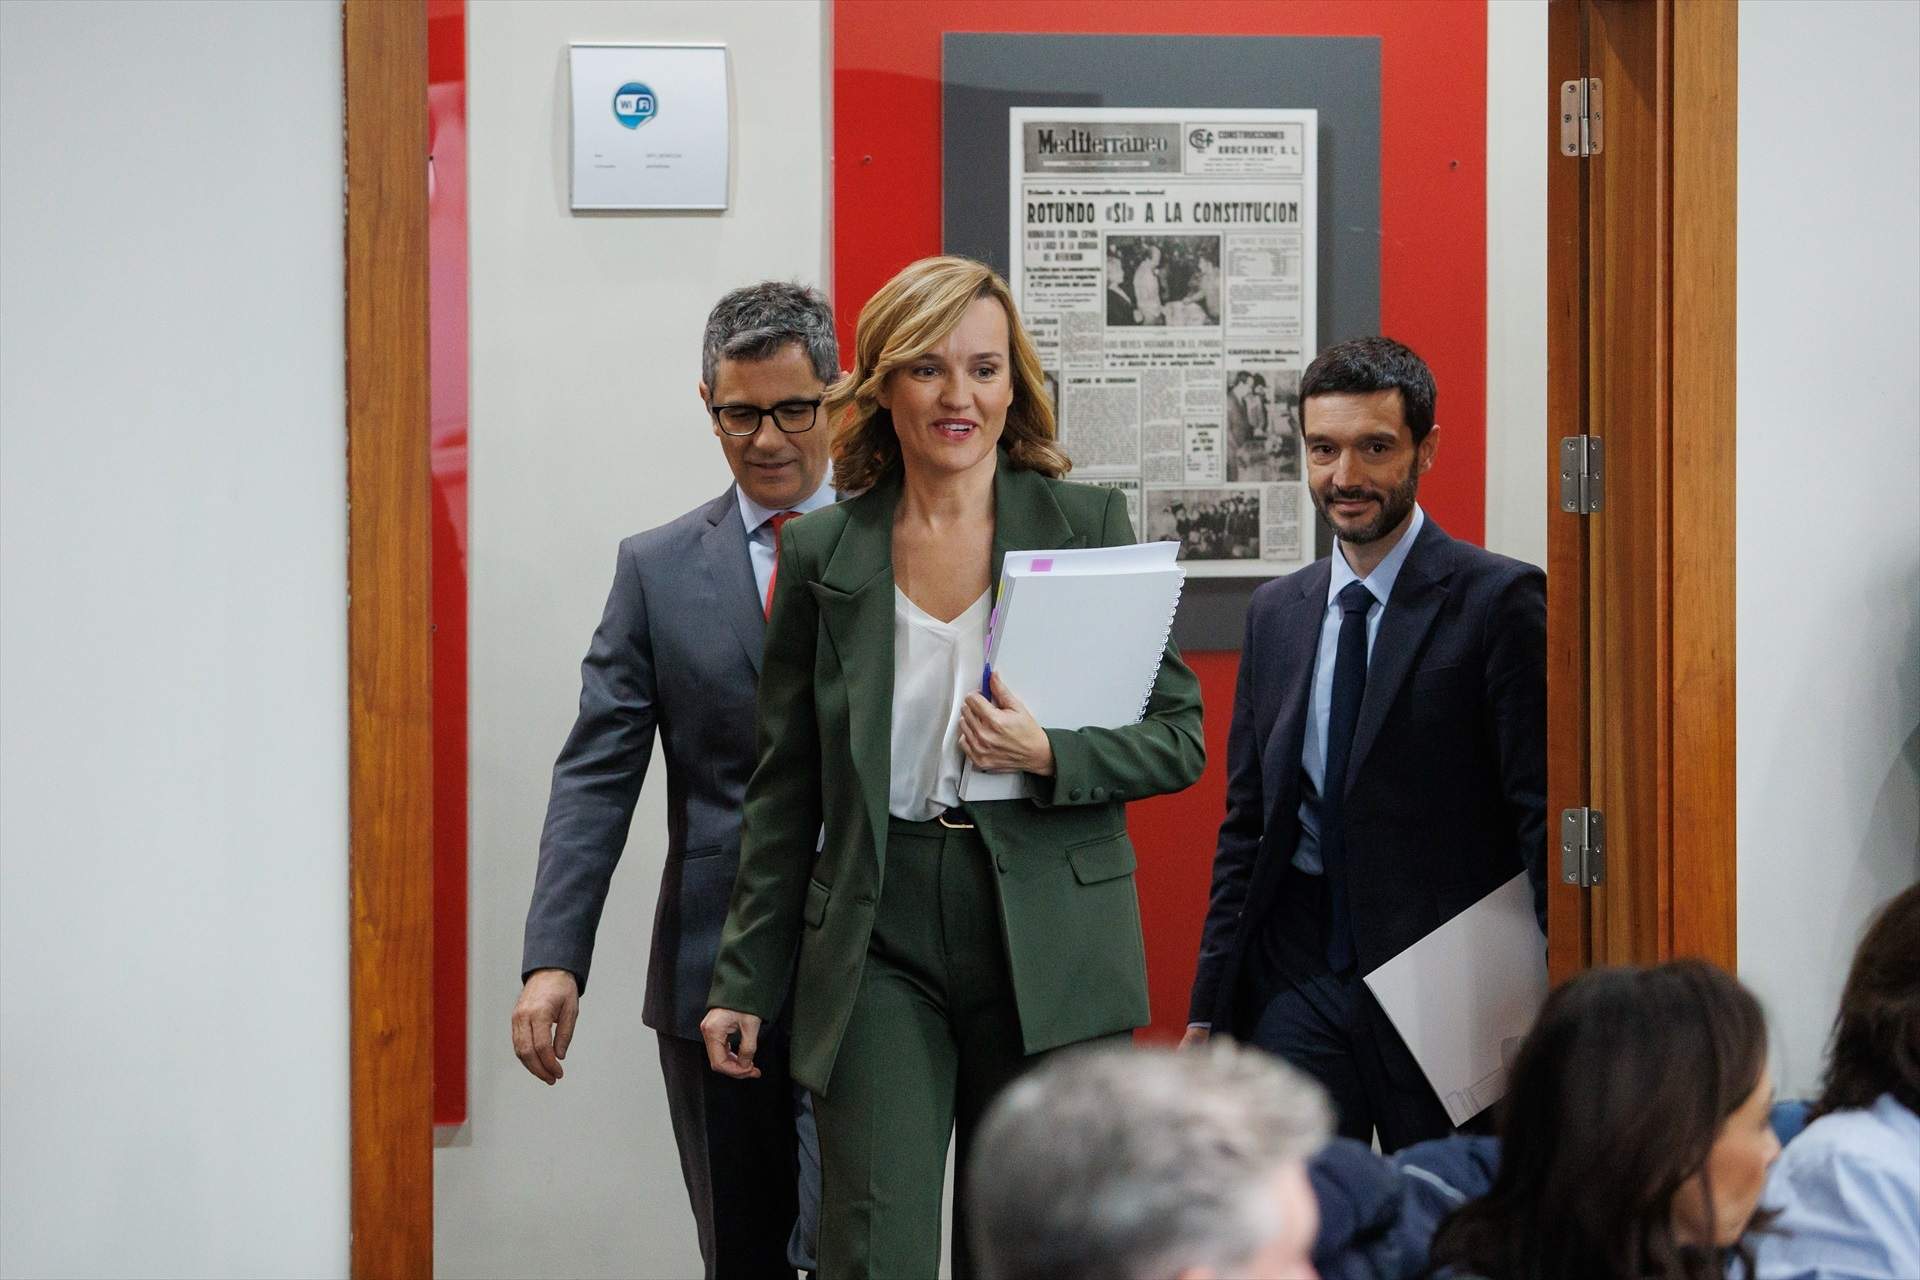 El Gobierno hace leña con el giro del PP por el indulto a Puigdemont: "¿Pedirán perdón"?